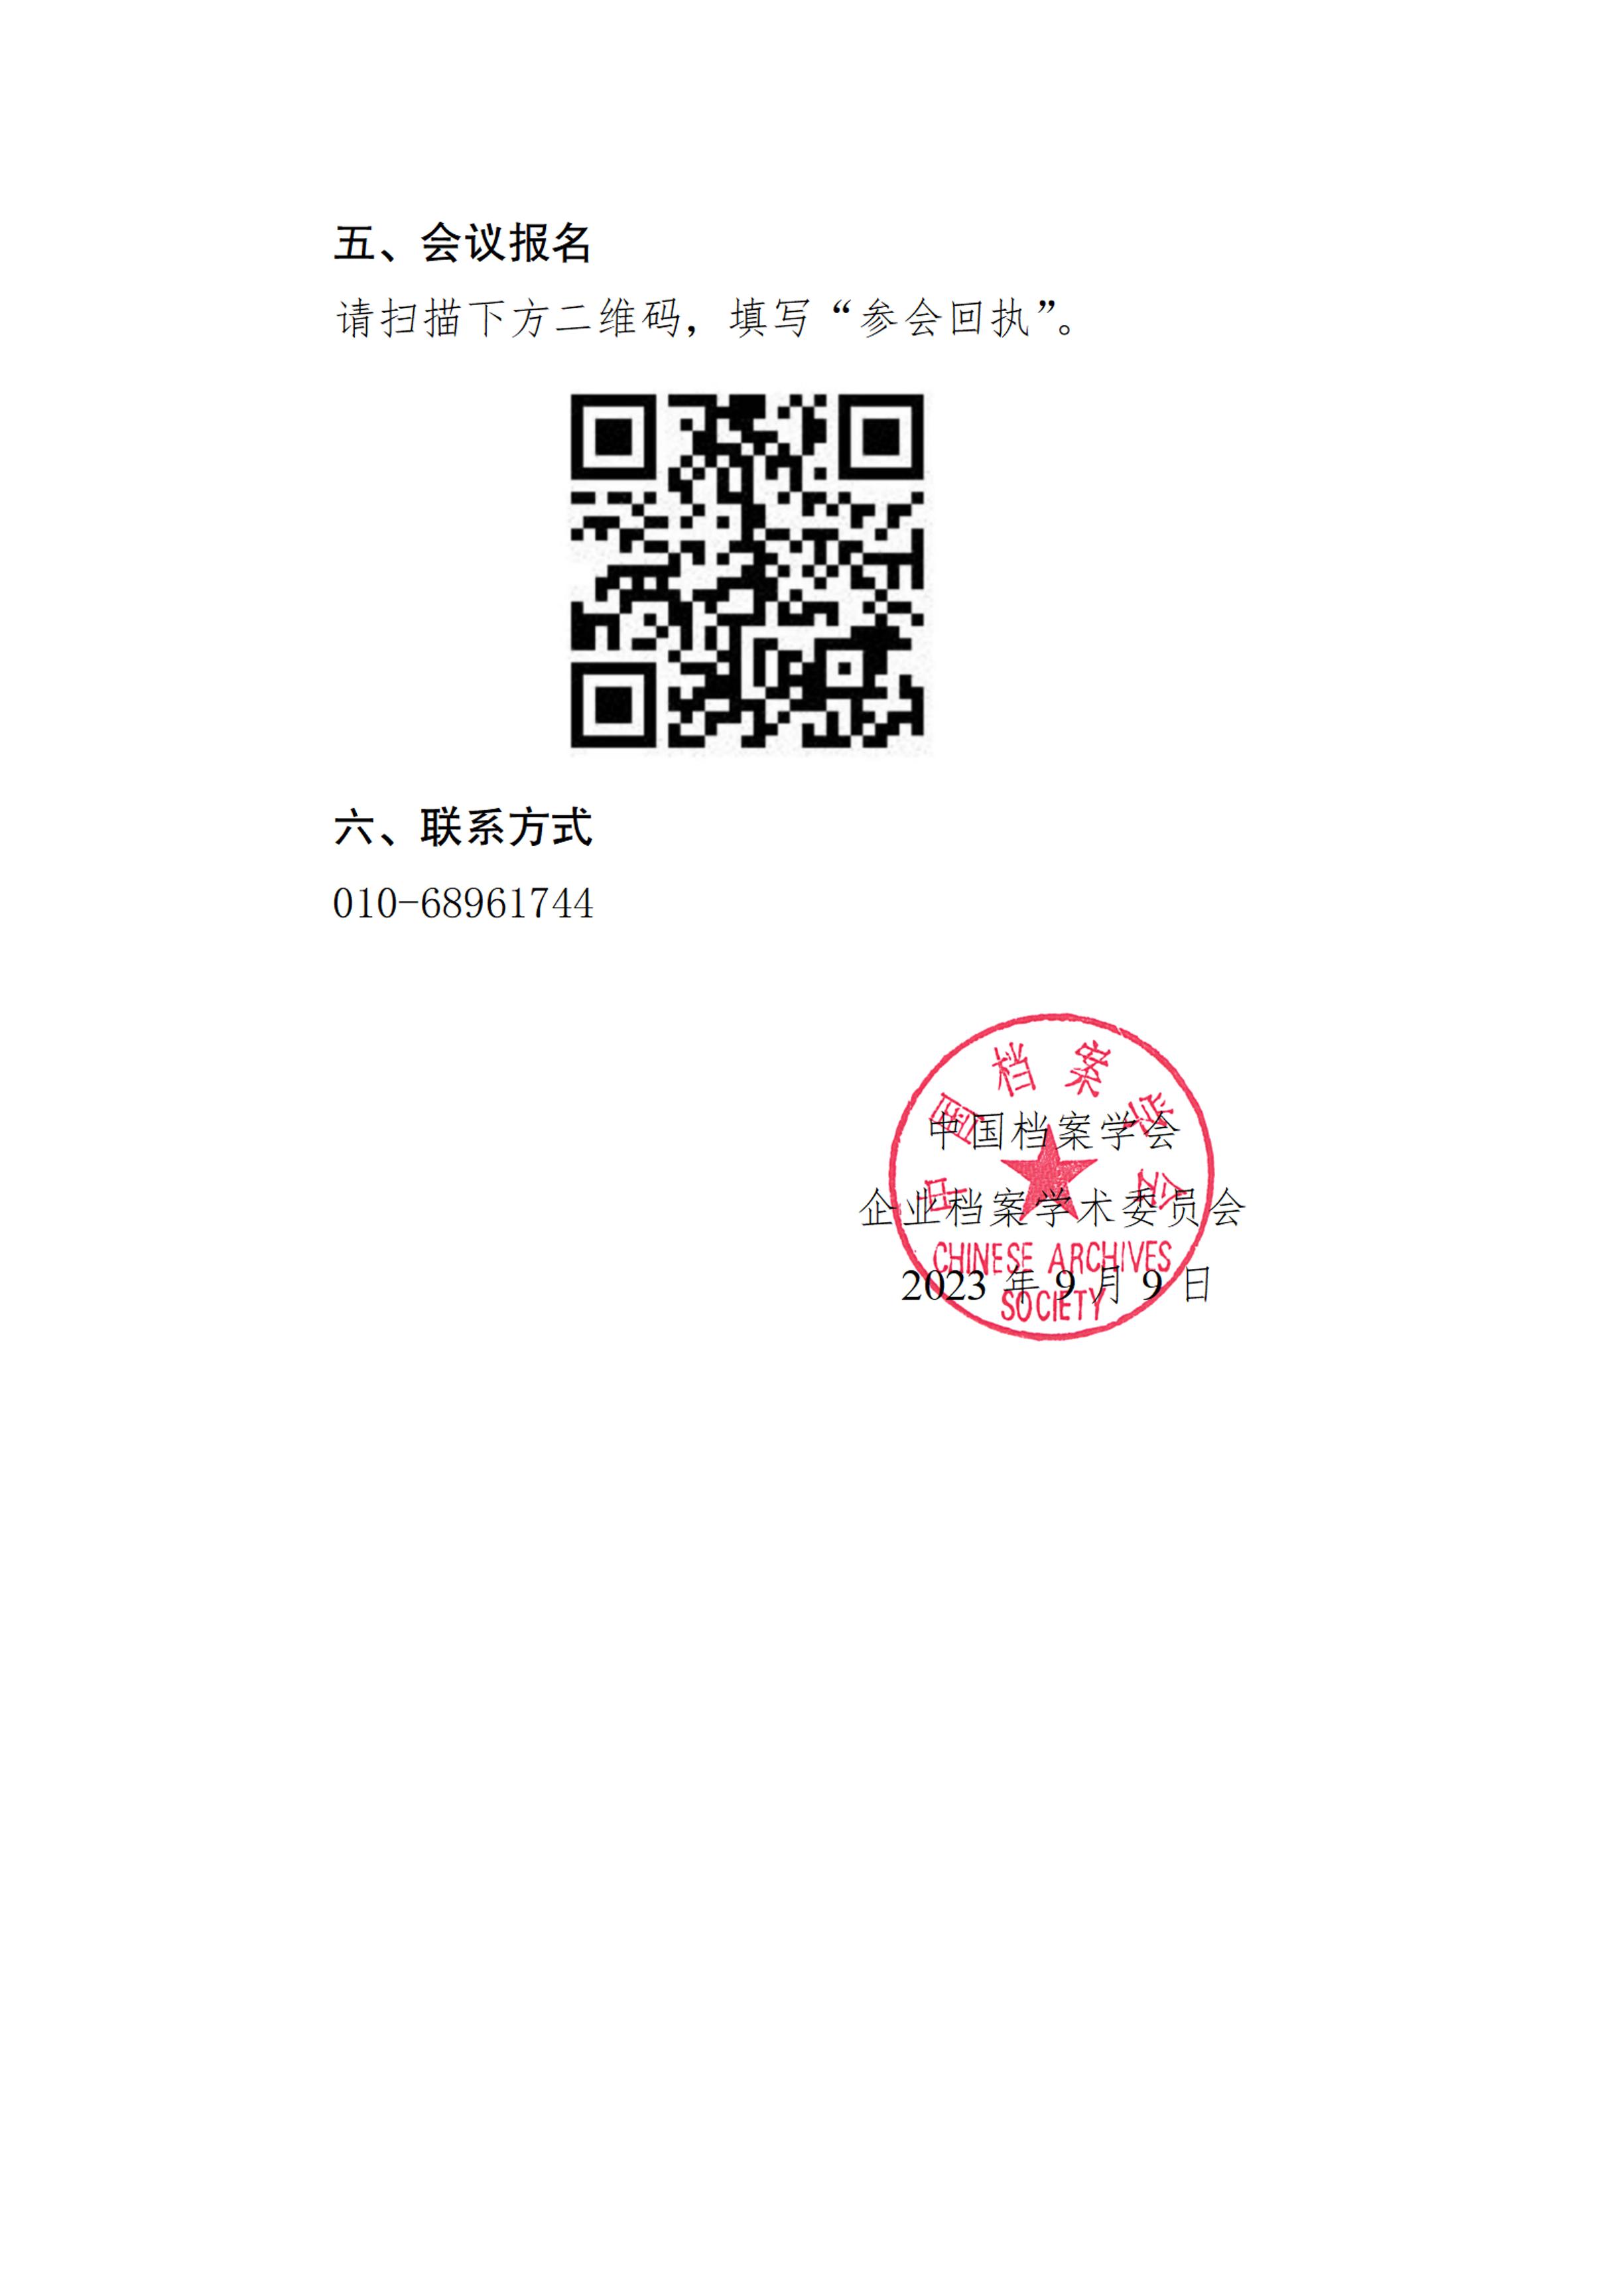 关于召开中国档案学会企业档案学术委员会数智化论坛的通知-2